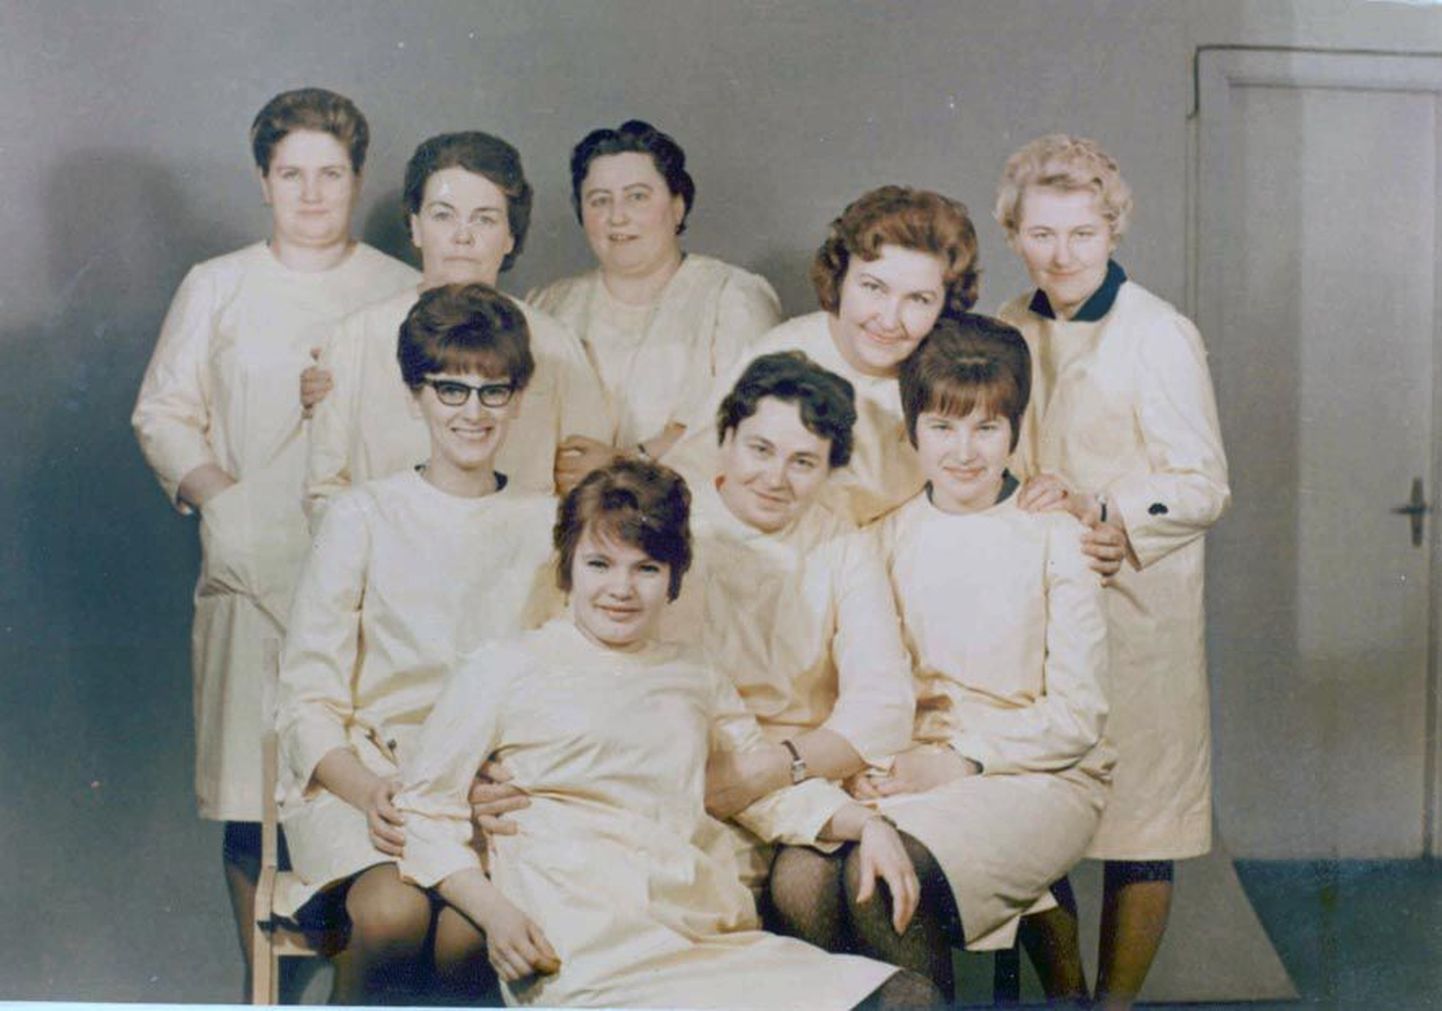 Paide juuksurid kolisid 45 aastat tagasi uude majja, kus nad said selga kollased kitlid (pildil istub Riina Orumaa esimeses reas paremal).